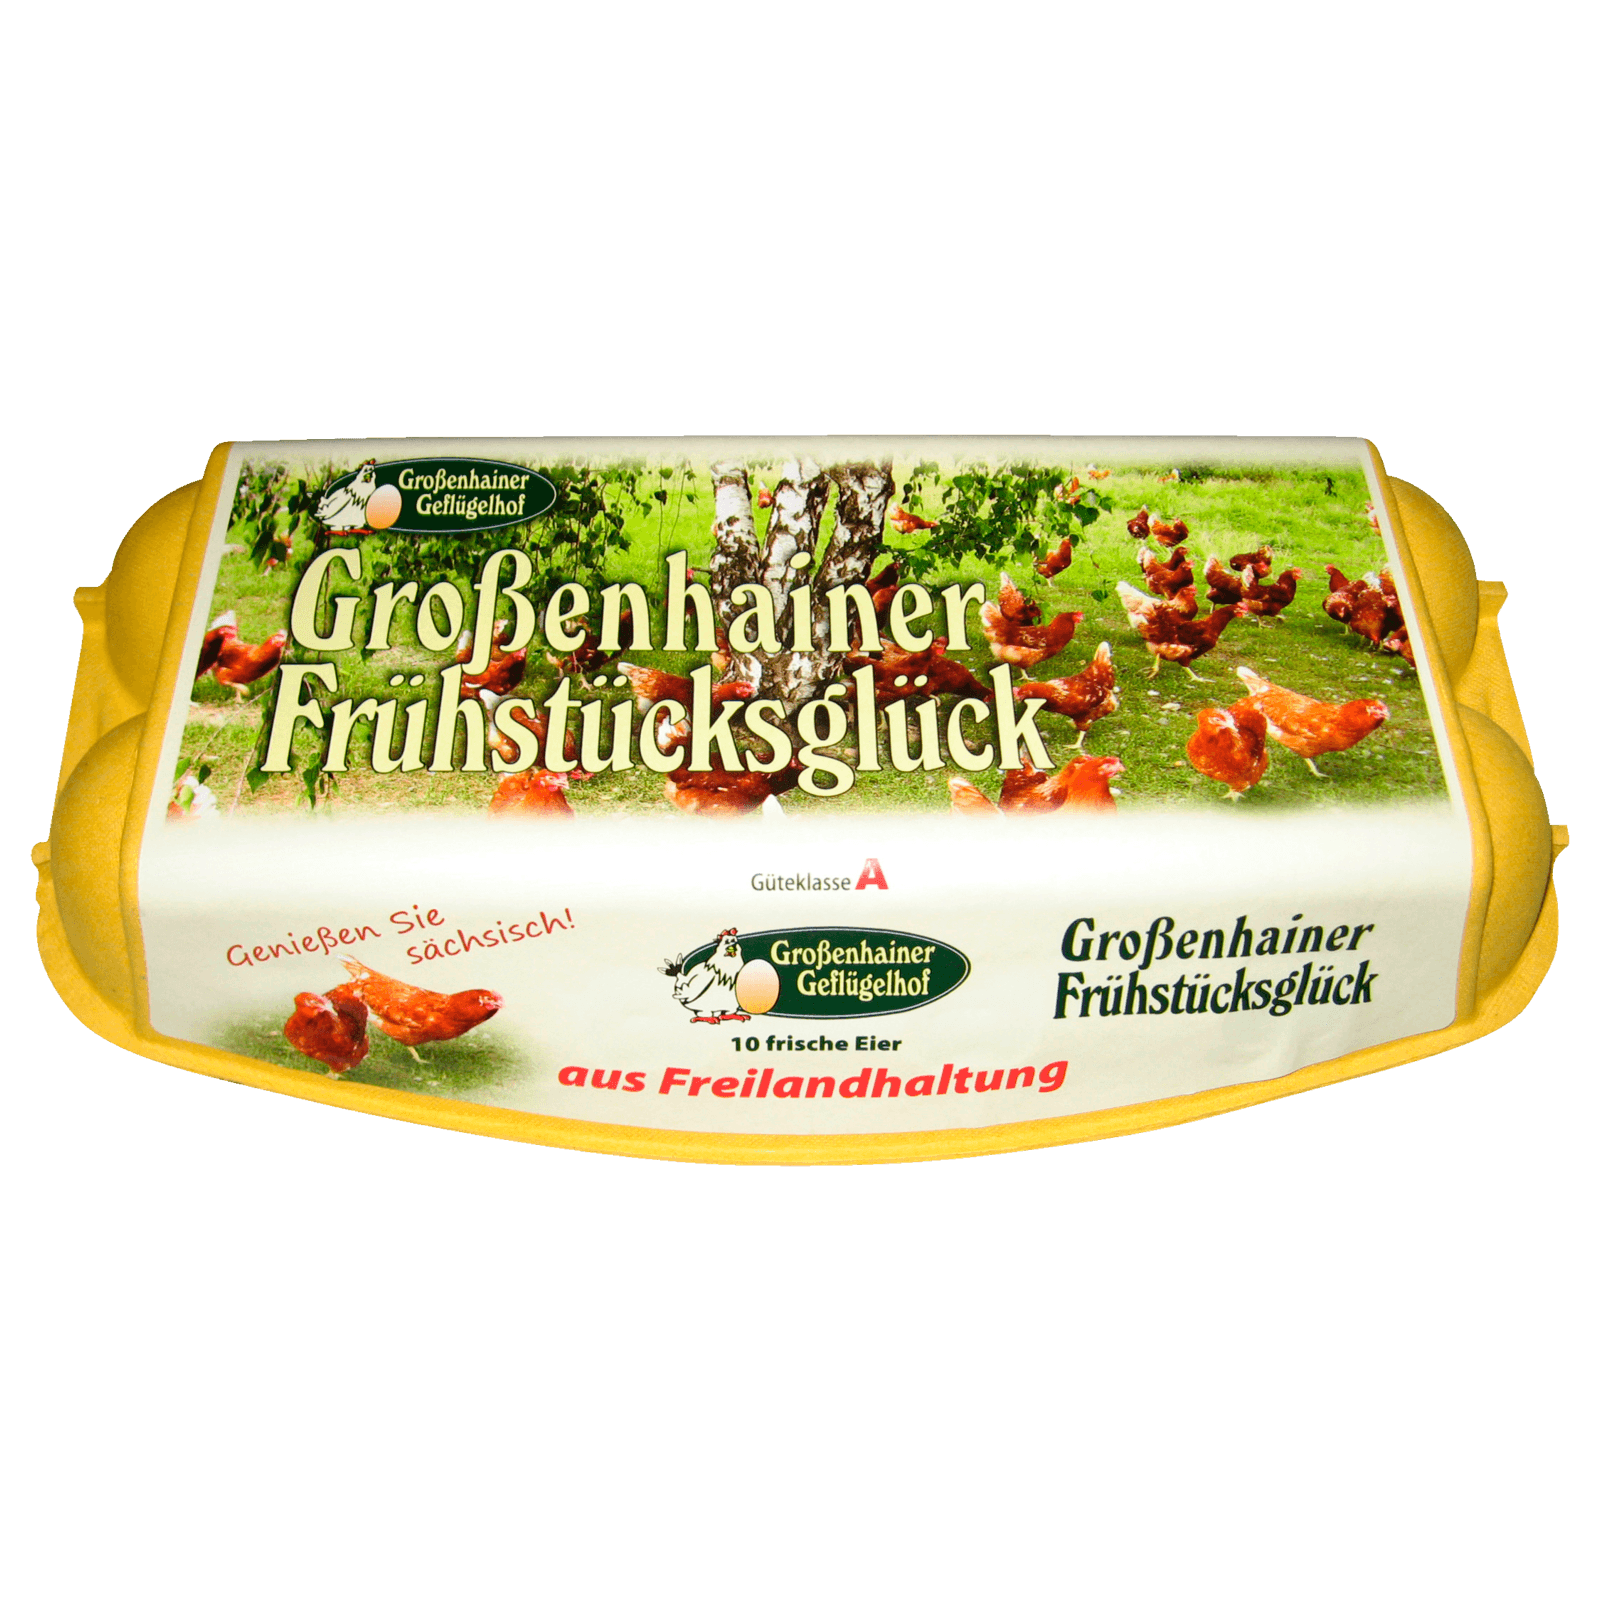 Großenhainer Frühstücksglück Eier Freilandhaltung 10 Stück  für 3.69 EUR